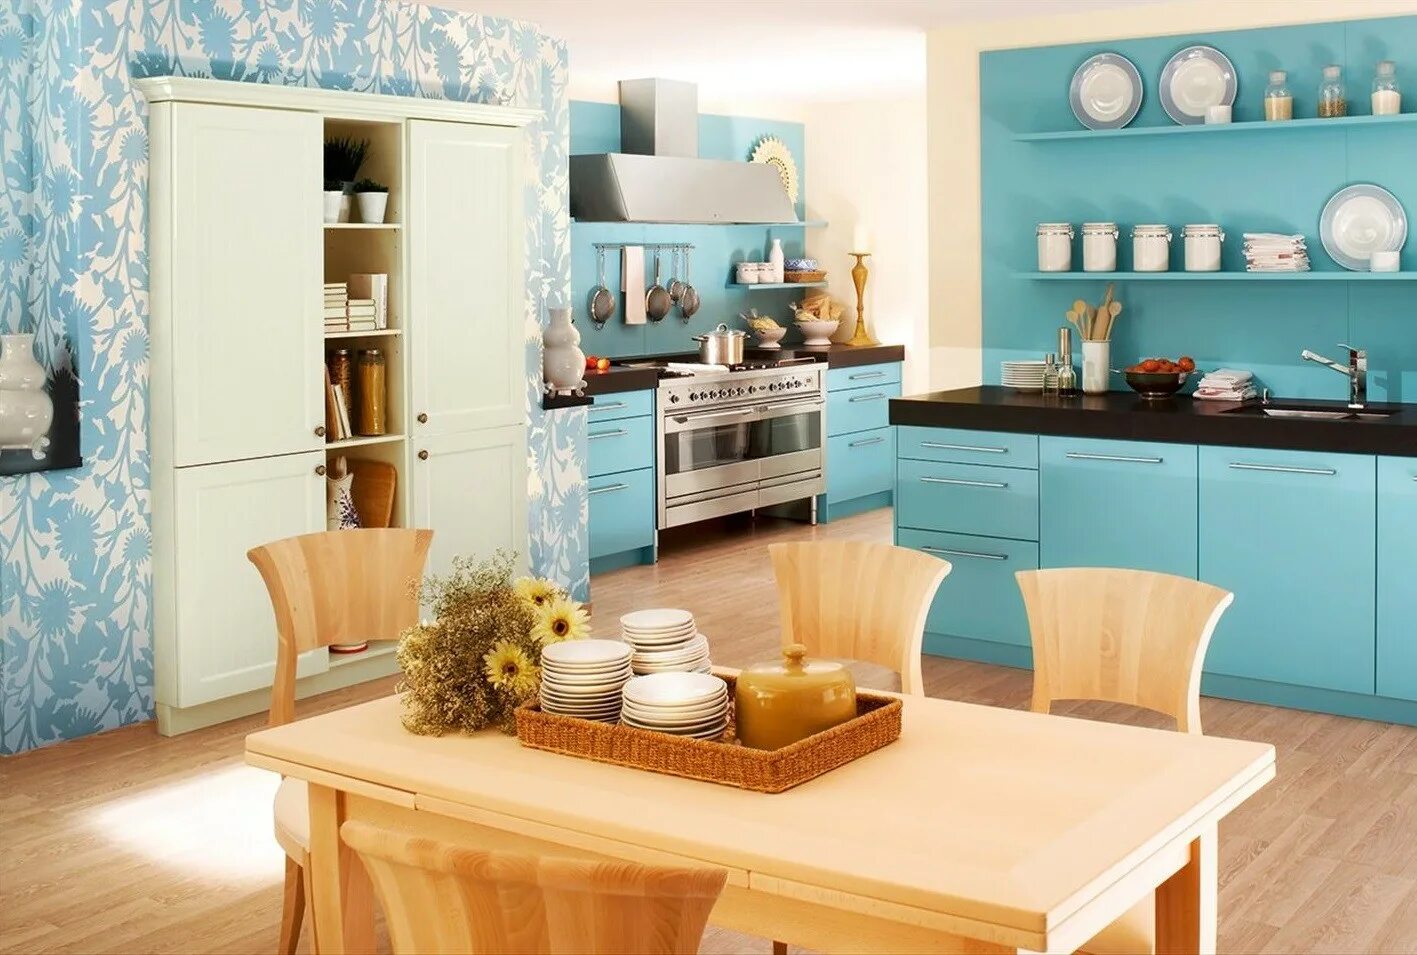 Кухня в бирюзовом цвете. Кухня в голубых тонах. Бирюзовая кухня в интерьере. Голубые стены в интерьере кухни. Как подобрать обои гарнитуру